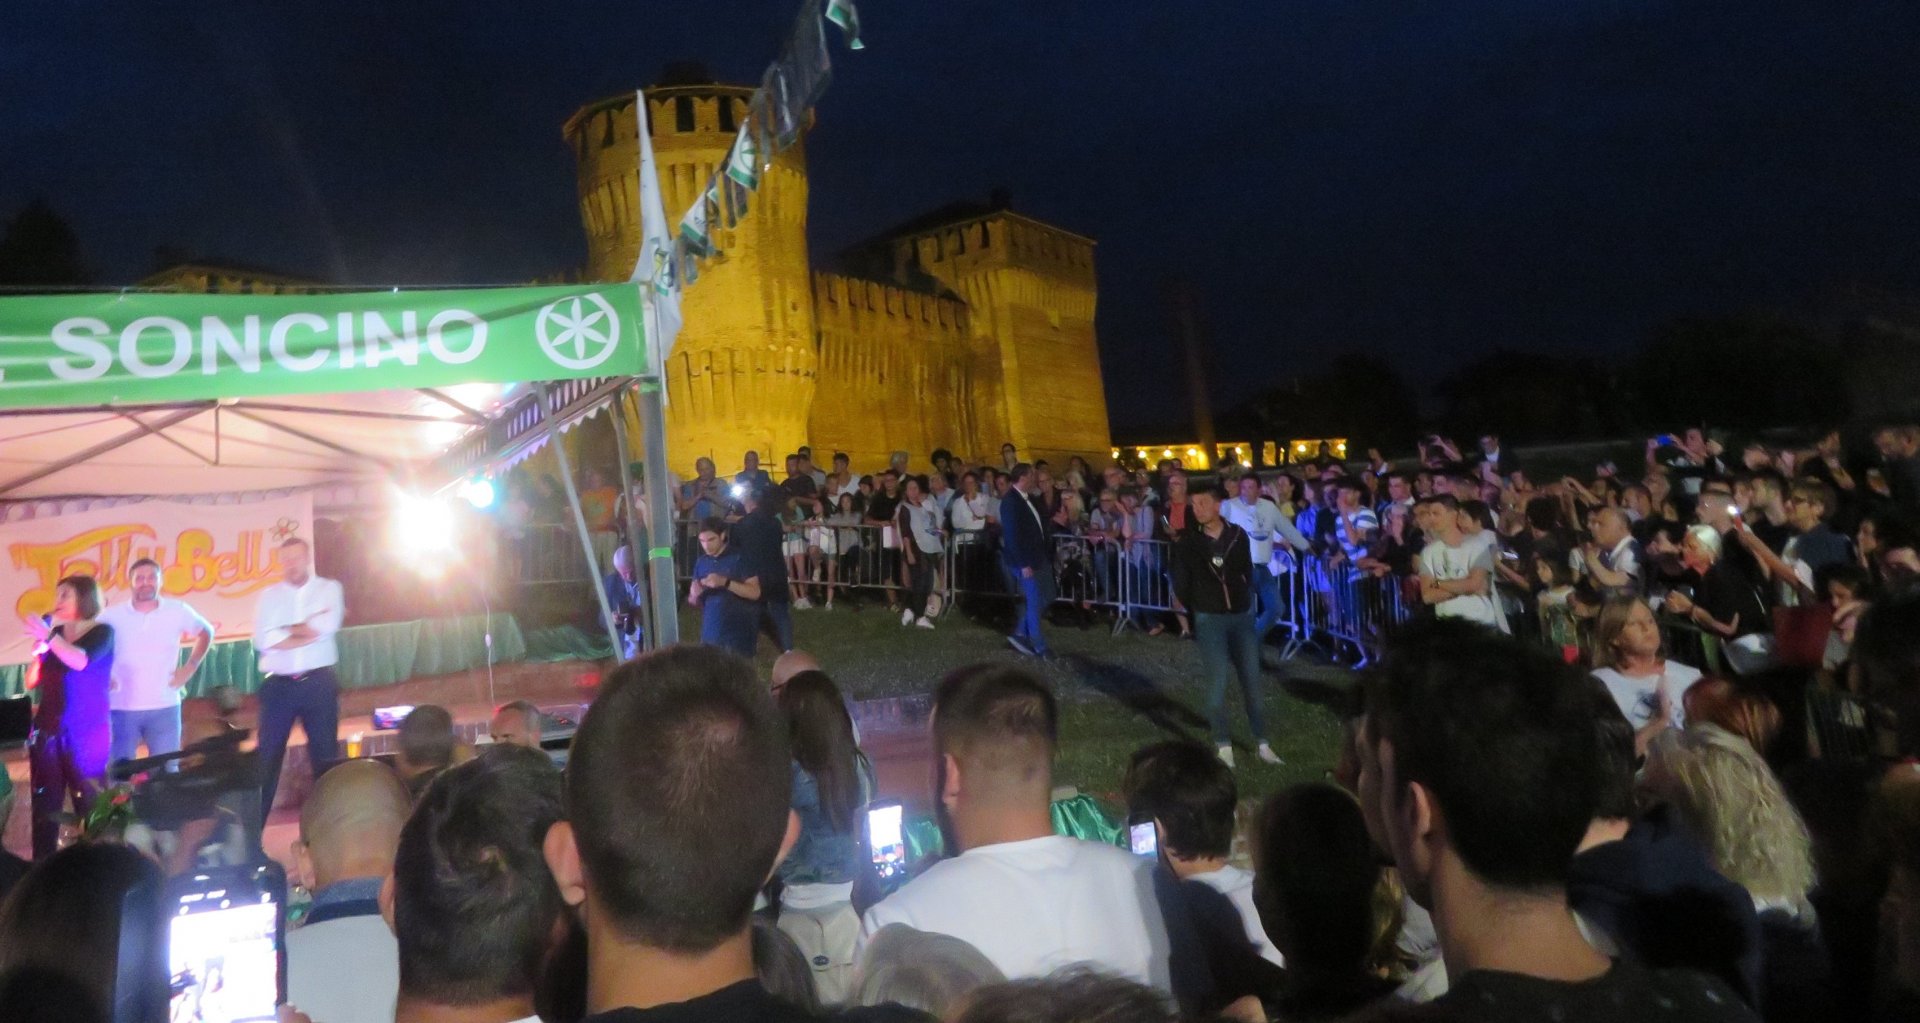 4mila persone a Soncino per Salvini per la festa della Lega (1)